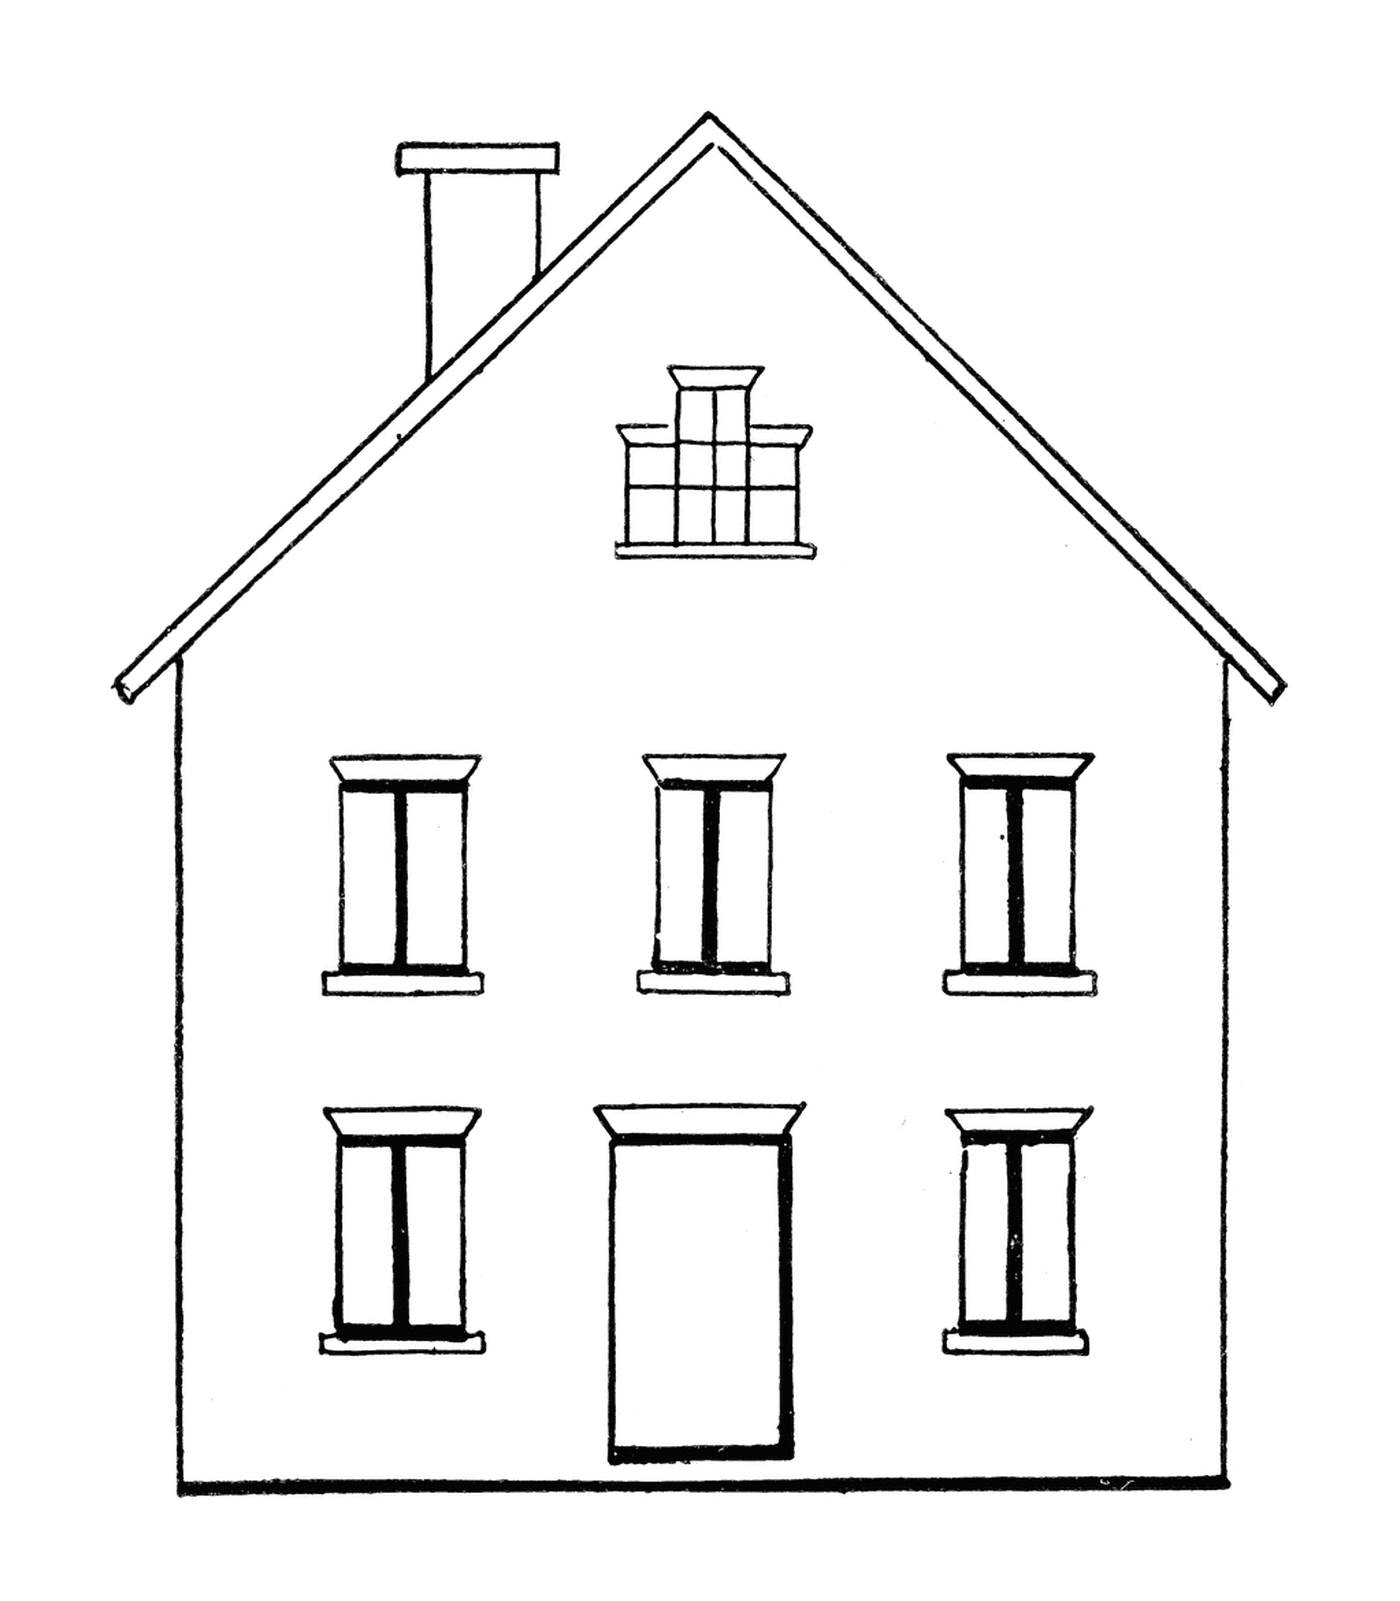  Encantadora casa blanca con seis ventanas 